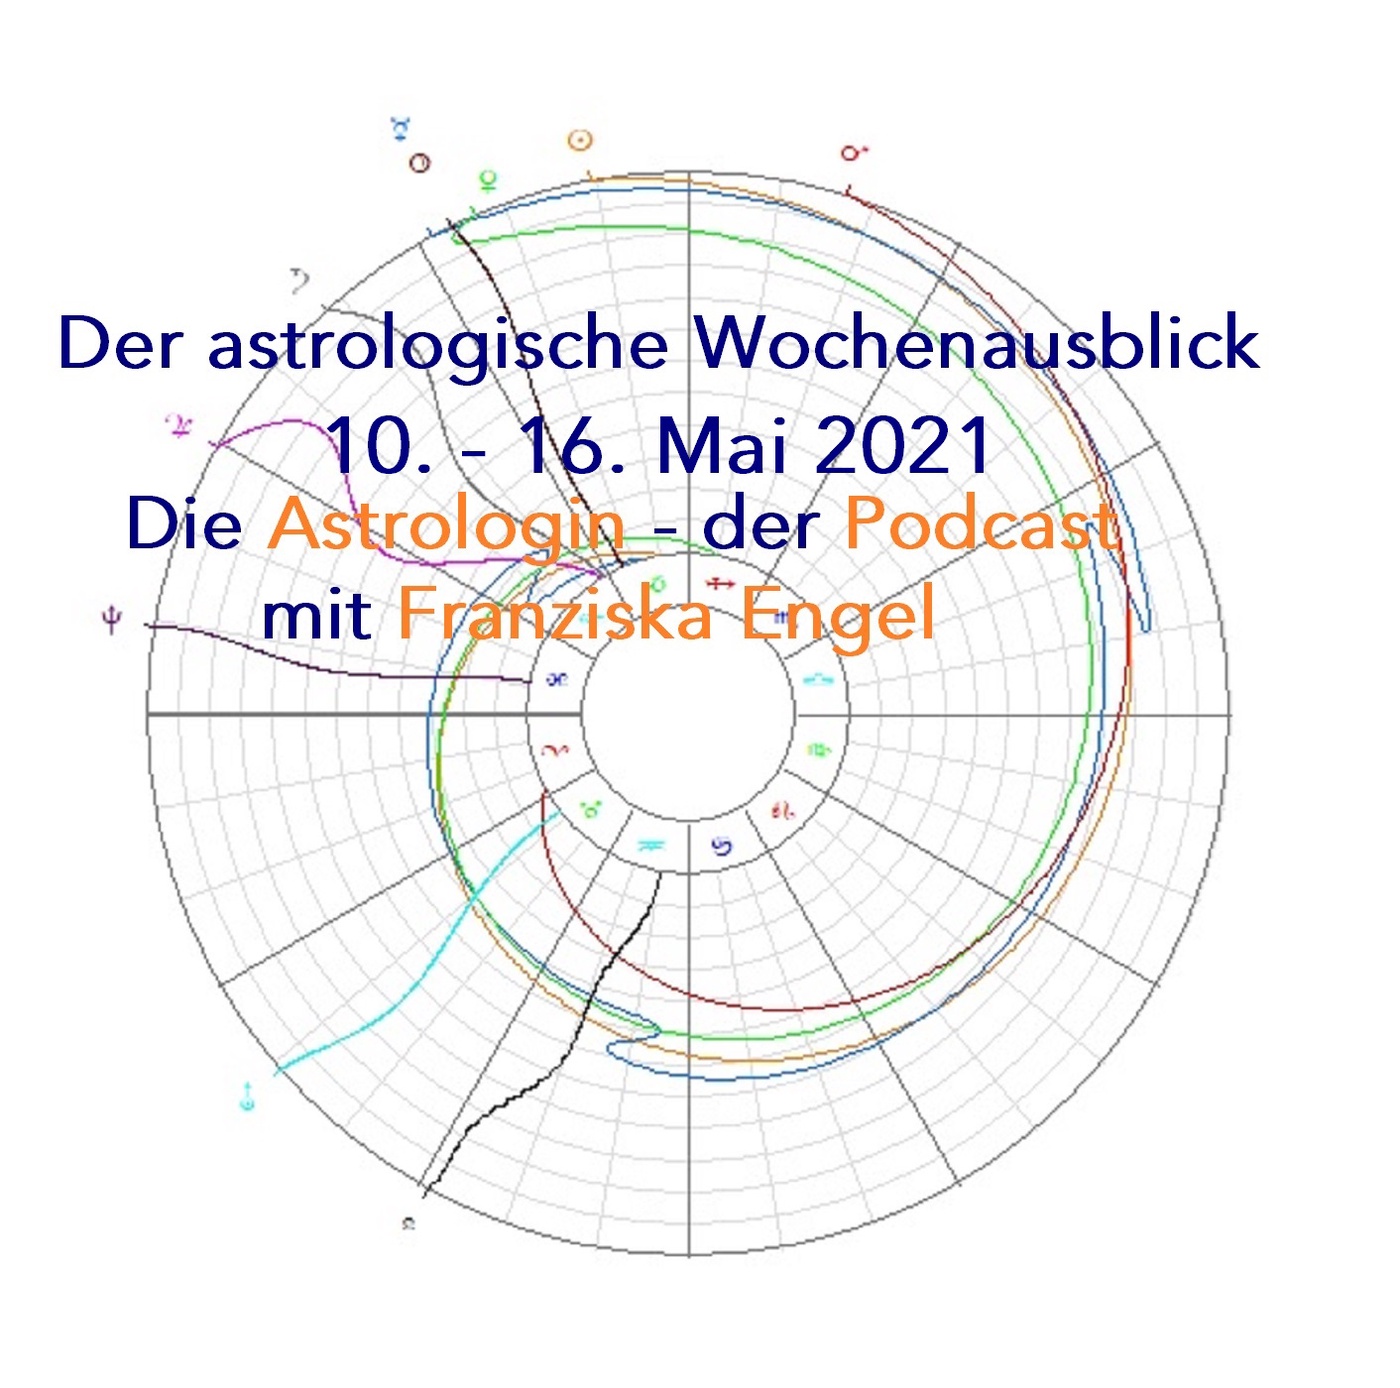 Astrologischer Wochenausblick 10. - 16. Mai 2021